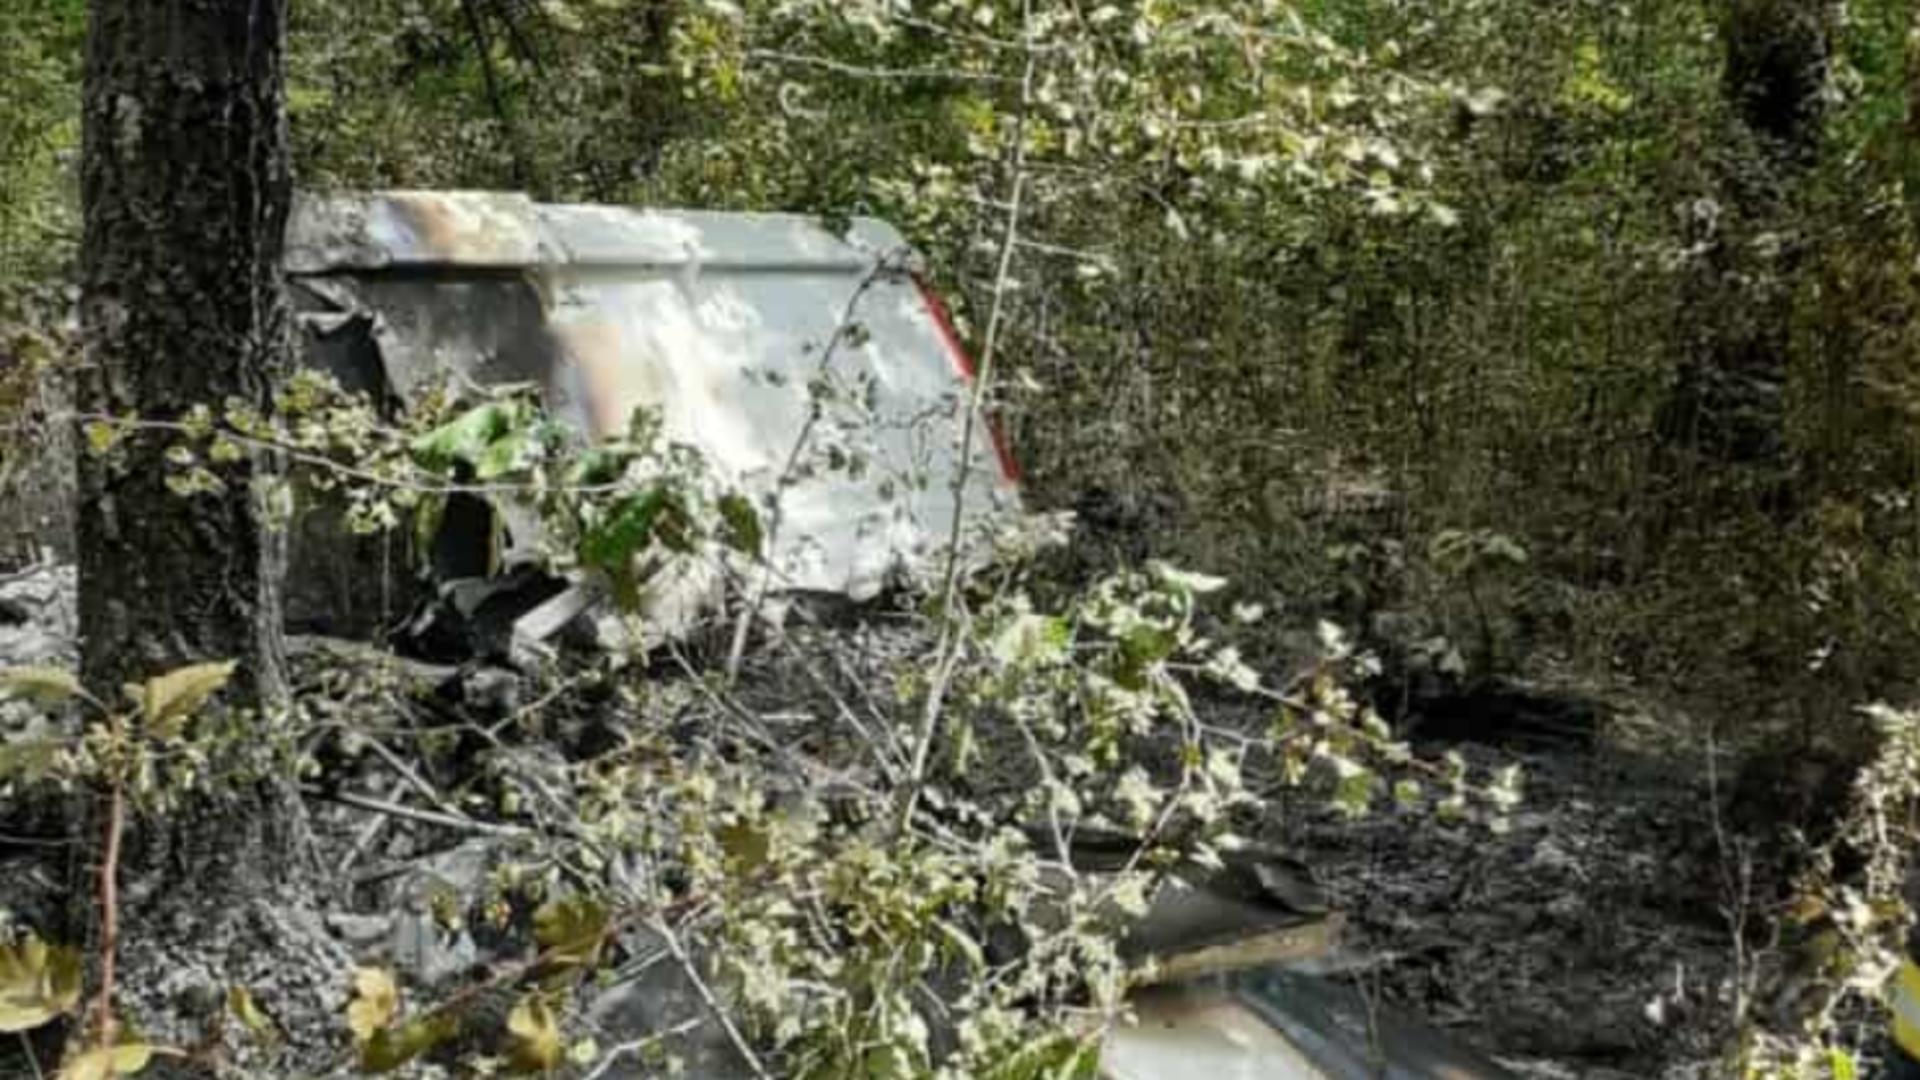 Avion prăbușit în Giurgiu. Cine sunt victimele de la Lețca Nouă - Pilotul și copilotul, găsiți carbonizați de salvatori